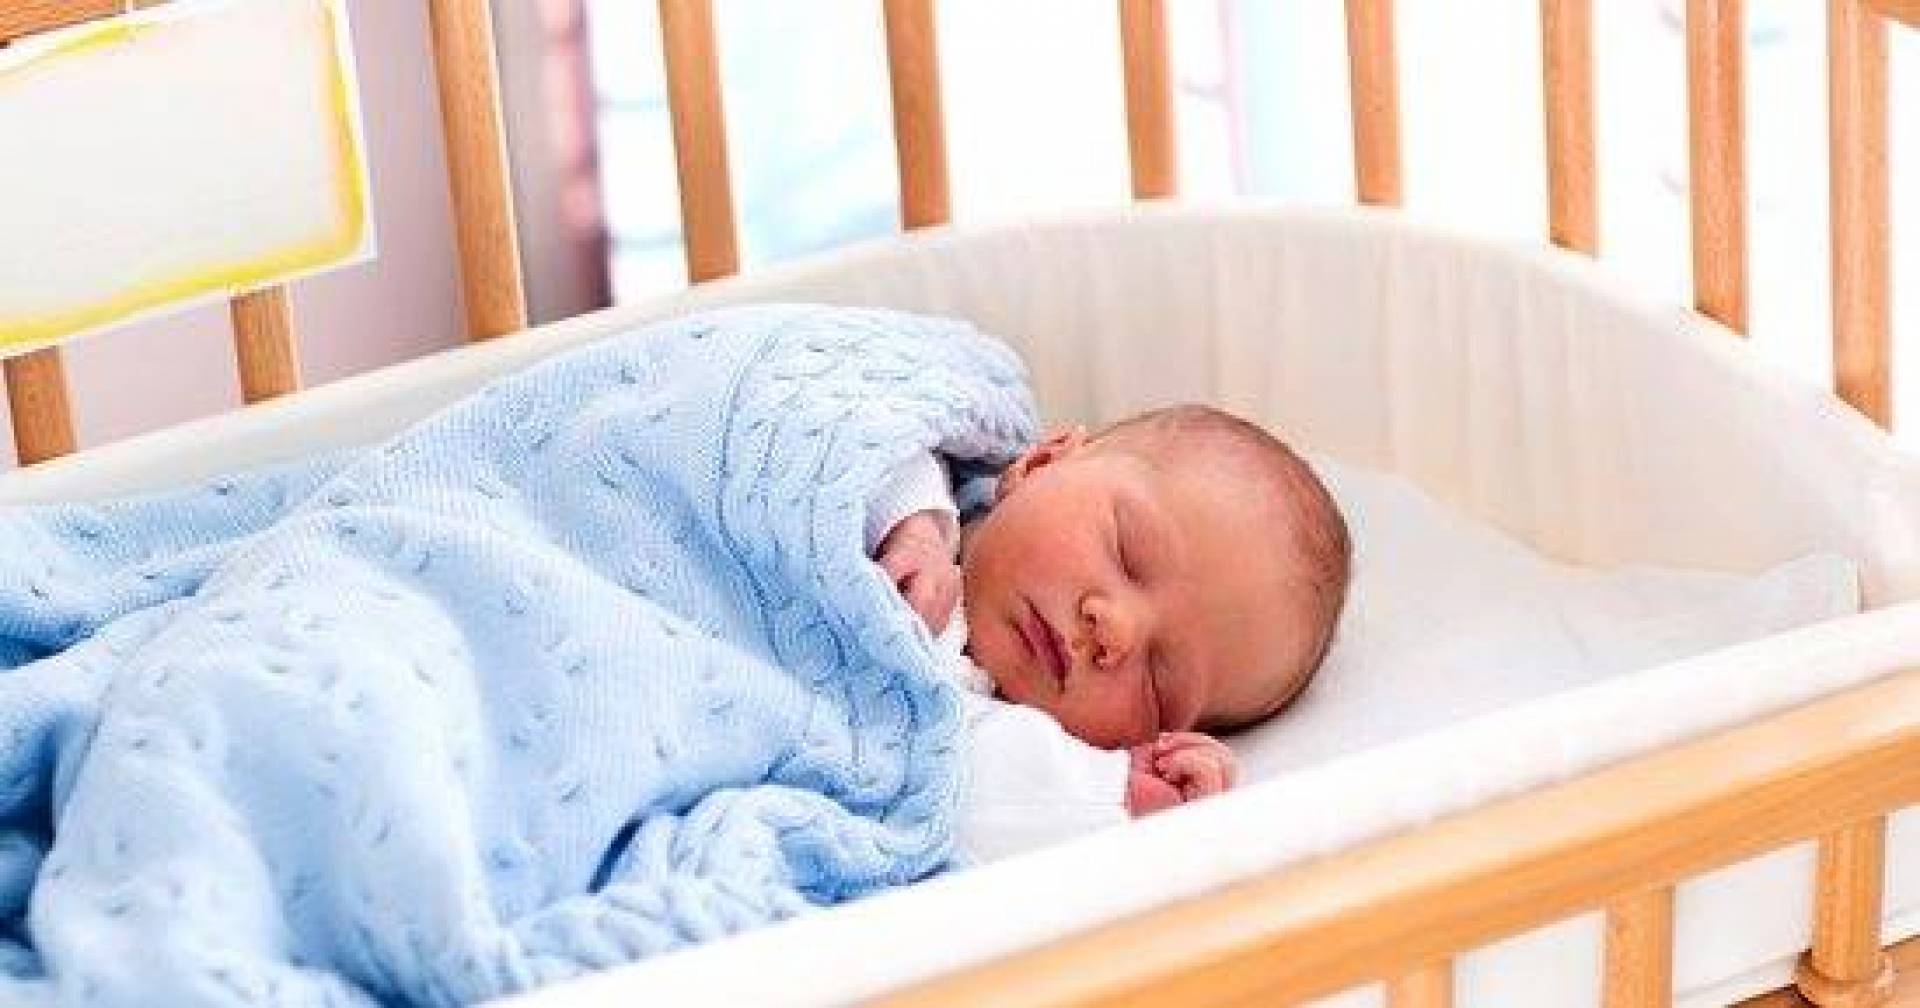 اكتشاف سبب بيولوجي لمتلازمة موت الرضيع المفاجئ